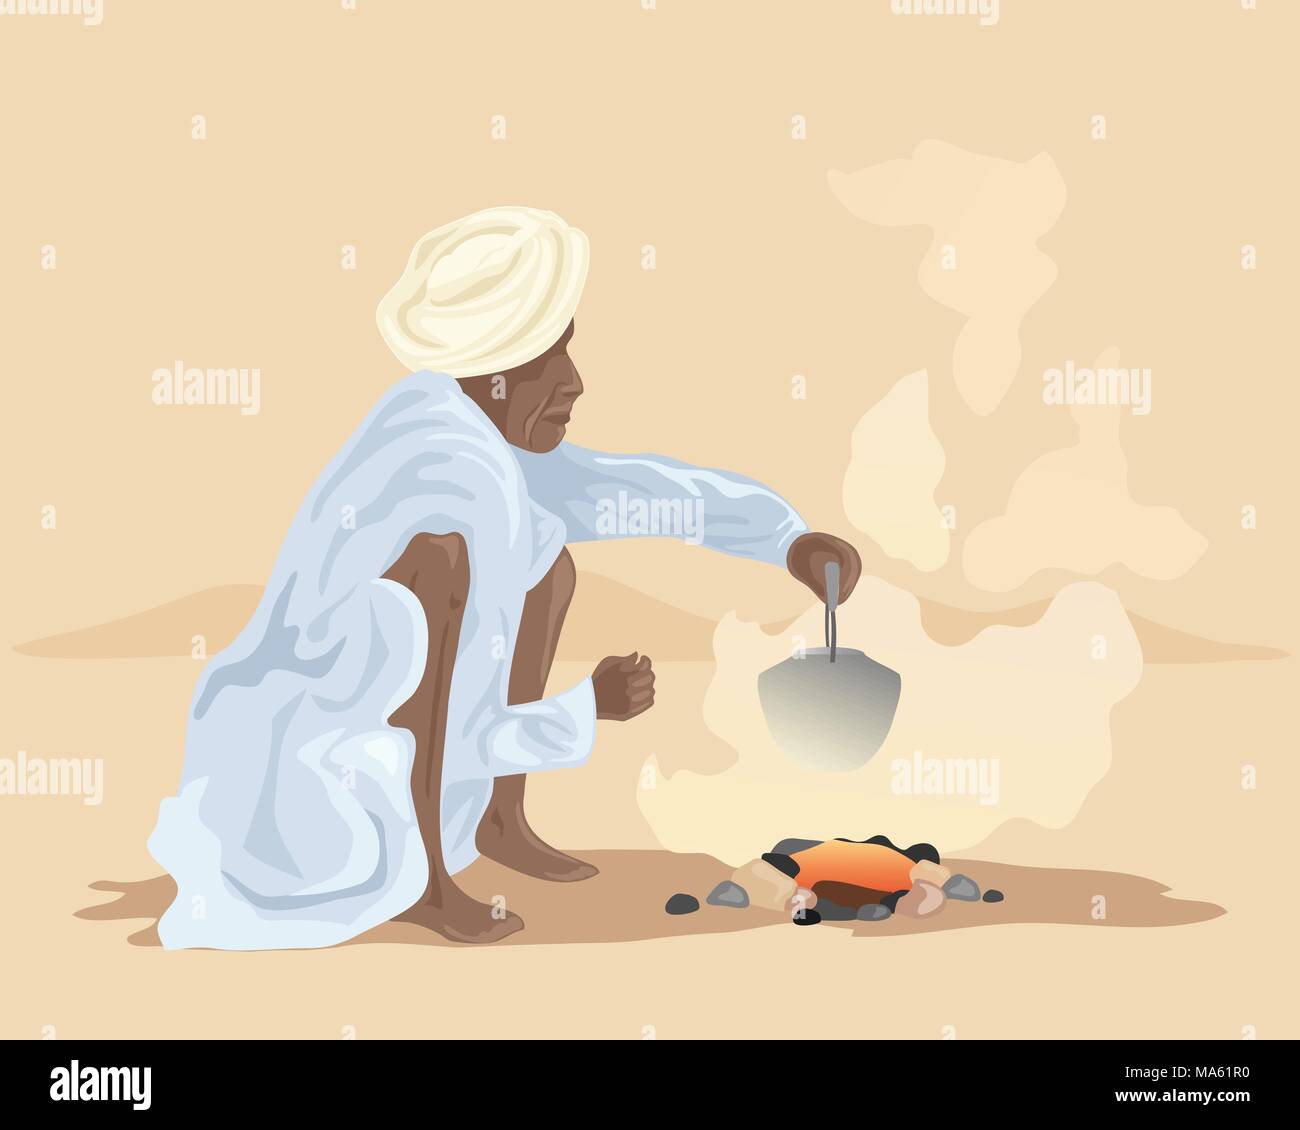 Un vecteur illustration en format eps 10 d'un indien faire chai sur un feu en extérieur dans un paysage désertique Illustration de Vecteur